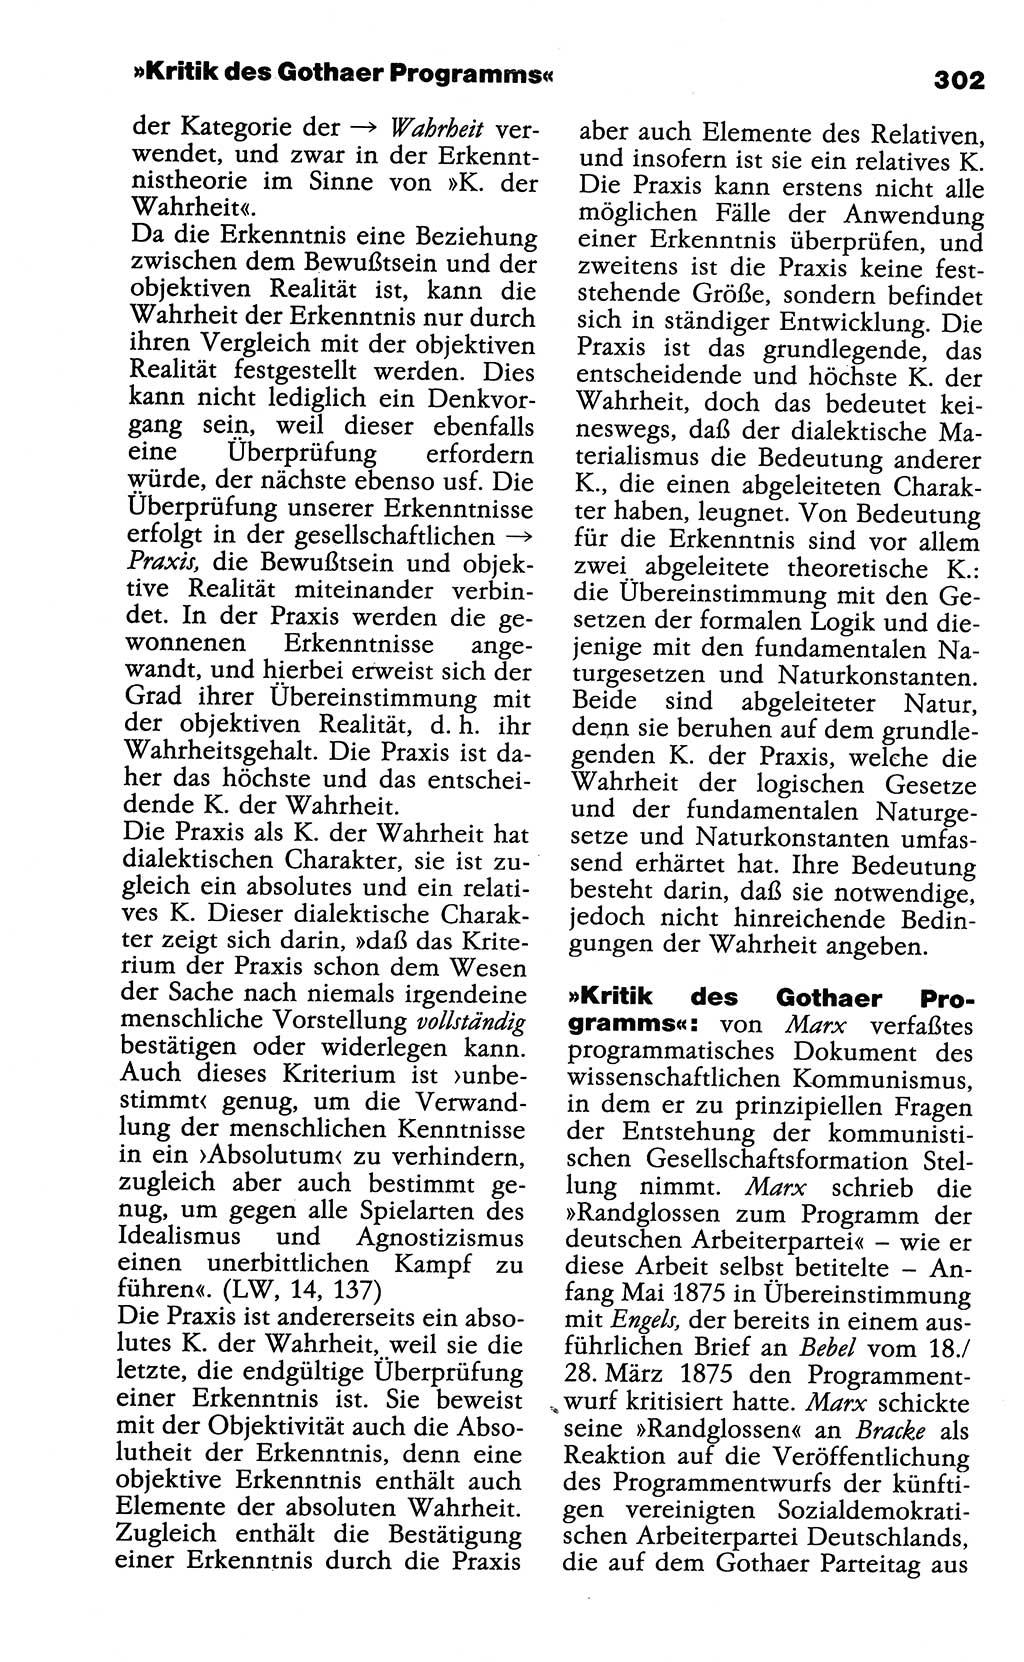 Wörterbuch der marxistisch-leninistischen Philosophie [Deutsche Demokratische Republik (DDR)] 1985, Seite 302 (Wb. ML Phil. DDR 1985, S. 302)